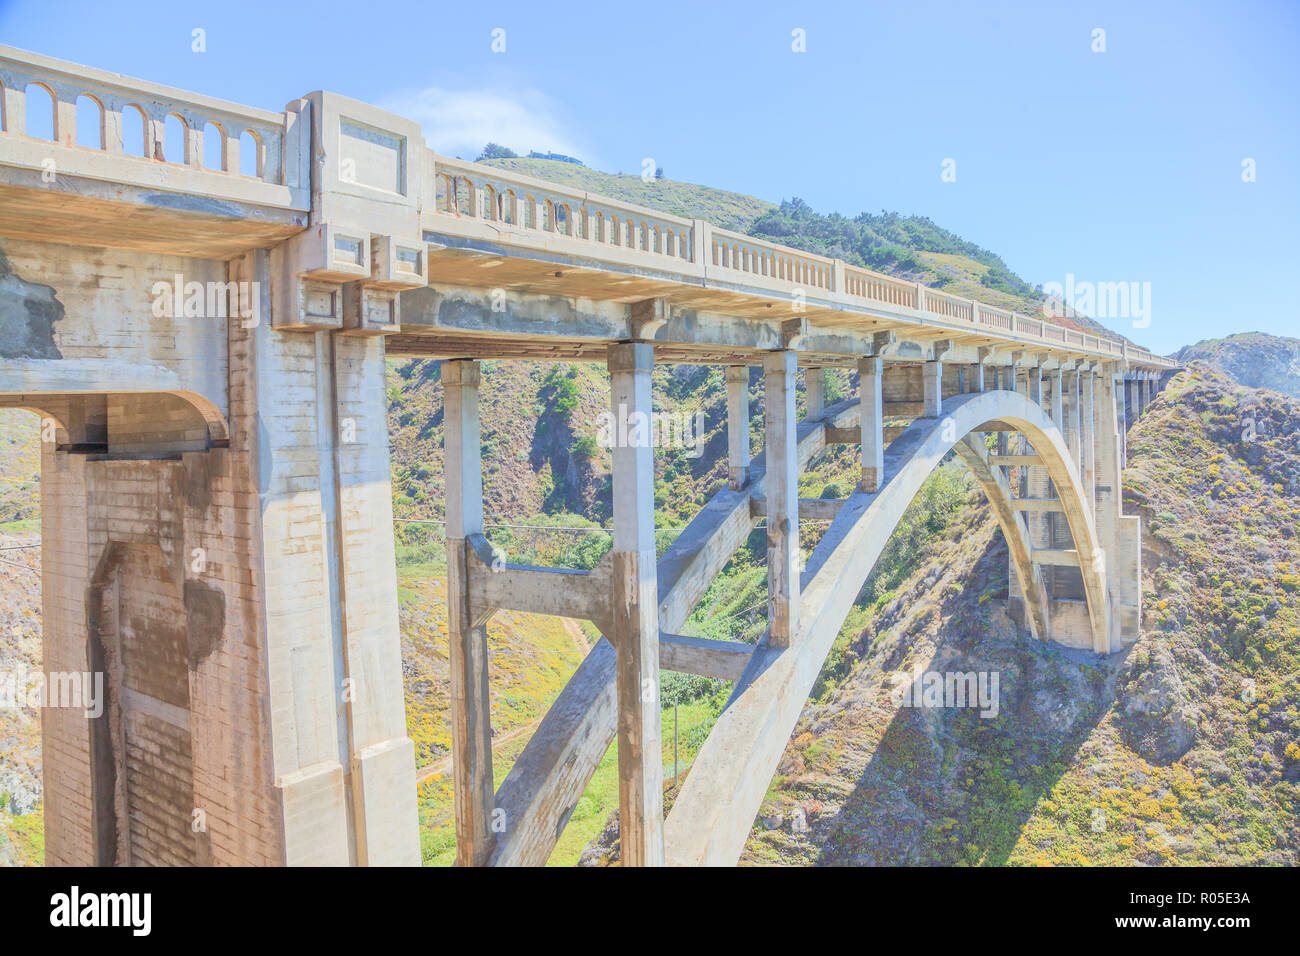 Iconic Bixby Bridge Auf Dem Pacific Coast Highway Nummer 1 In Kalifornien Usa Bixby Bridge Ist In Der Nahe Von Pfeiffer Canyon Bridge In Big Sur Zusammengebrochen American Travel Konzept Weiches Licht